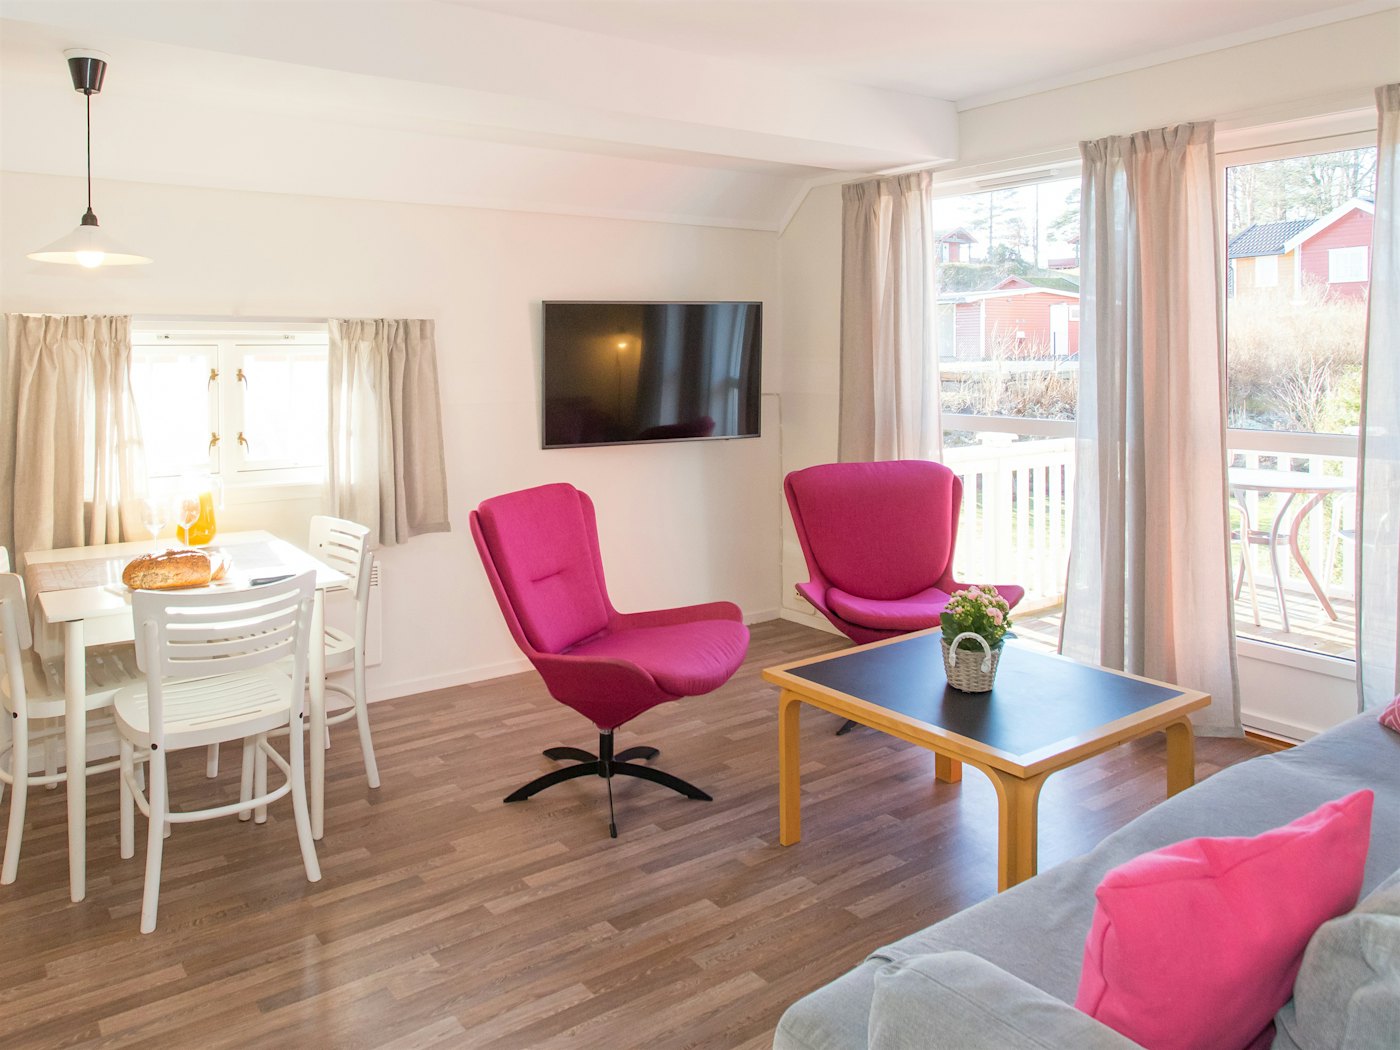 Heller und offener Raum mit viel natürlichem Licht durch große Fenster. Zwei rosafarbene Sessel, Sofa, Fernseher und gedeckter Esstisch zum Frühstück. Foto